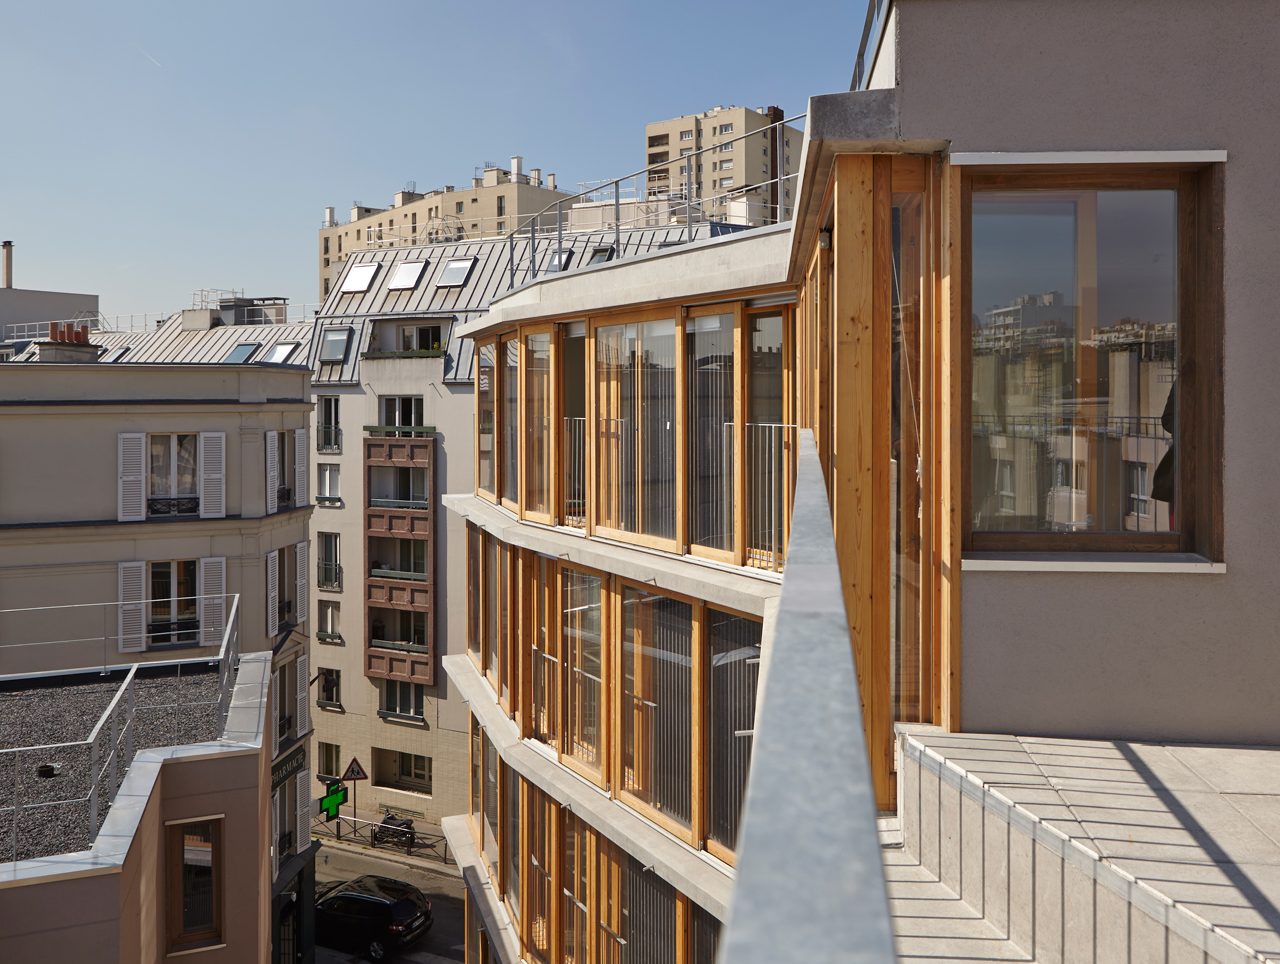 Rue des Orteaux by Babled Nouvet Reynaud Architectes. | METALOCUS